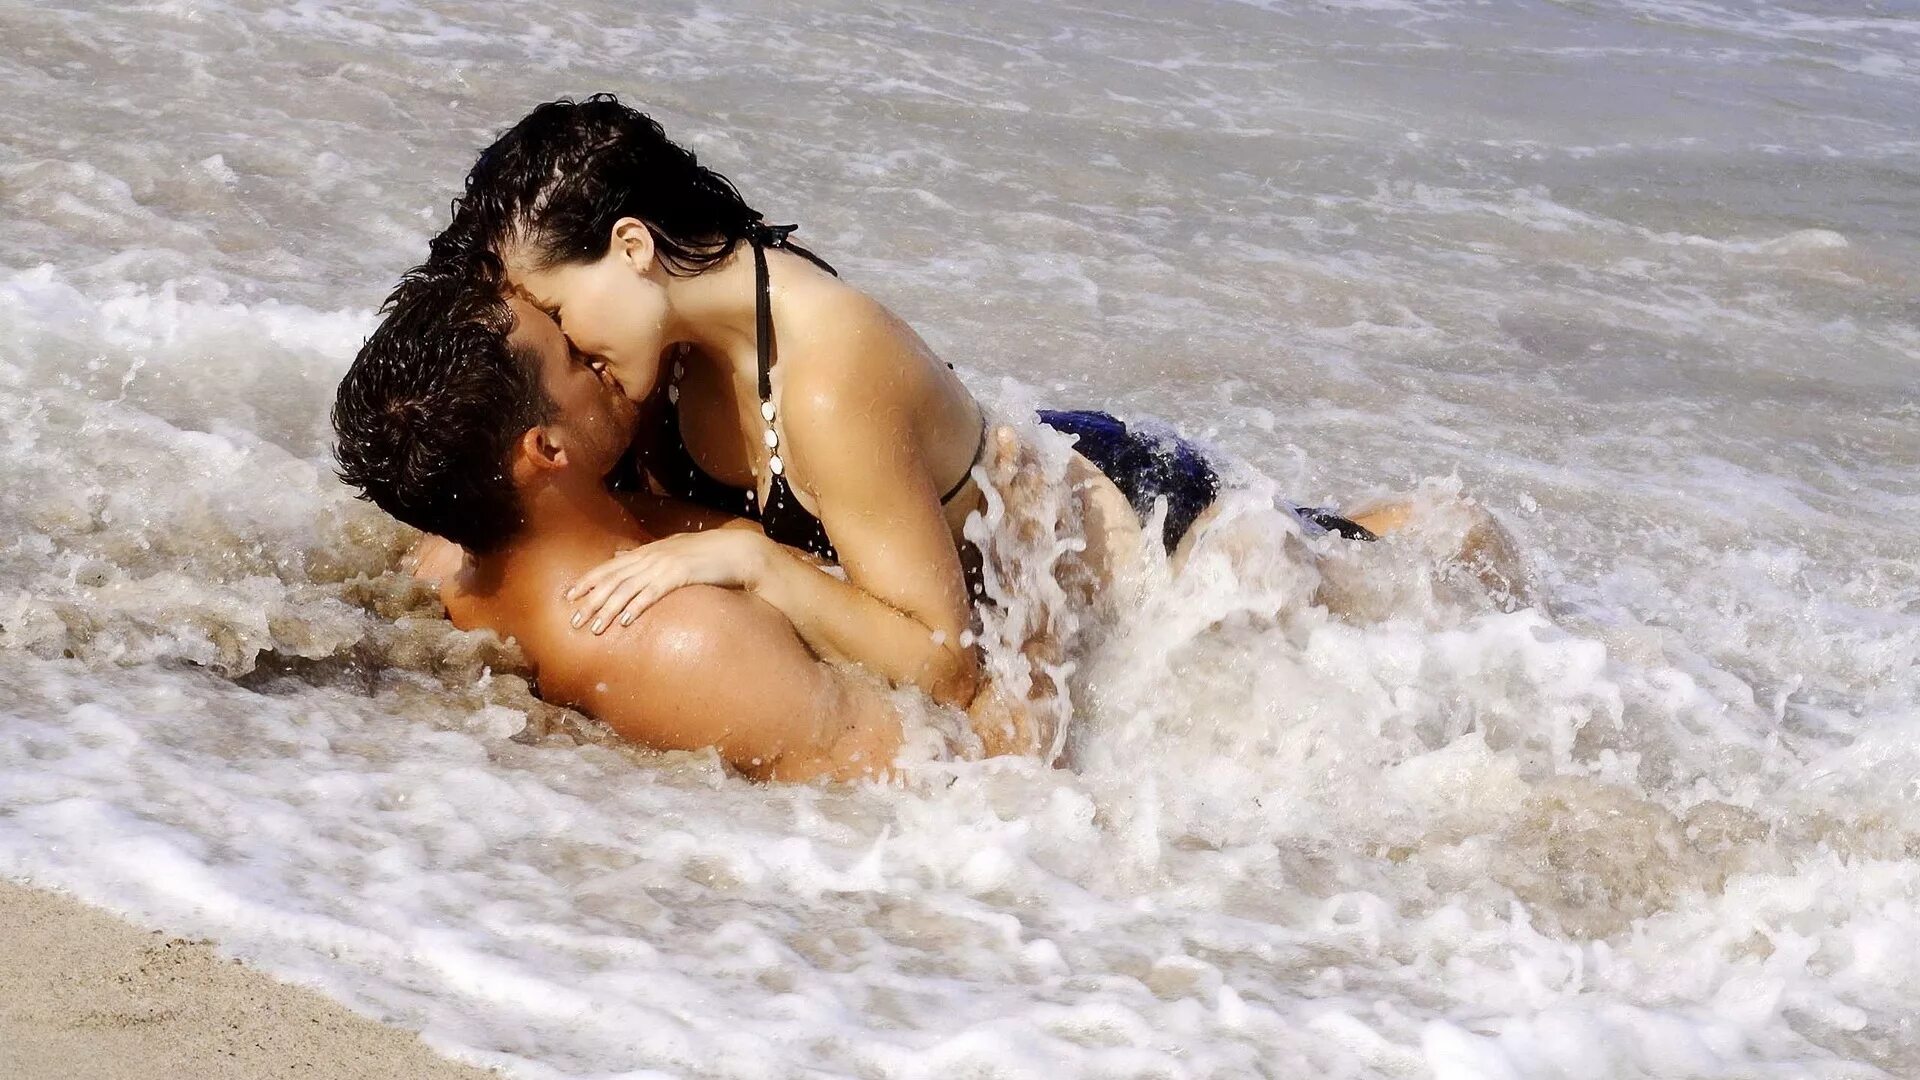 Мужчина романтик. Поцелуй на берегу моря. Романтика любовь нежность страсть. Пляж любовь. Заниматься любовью в море.